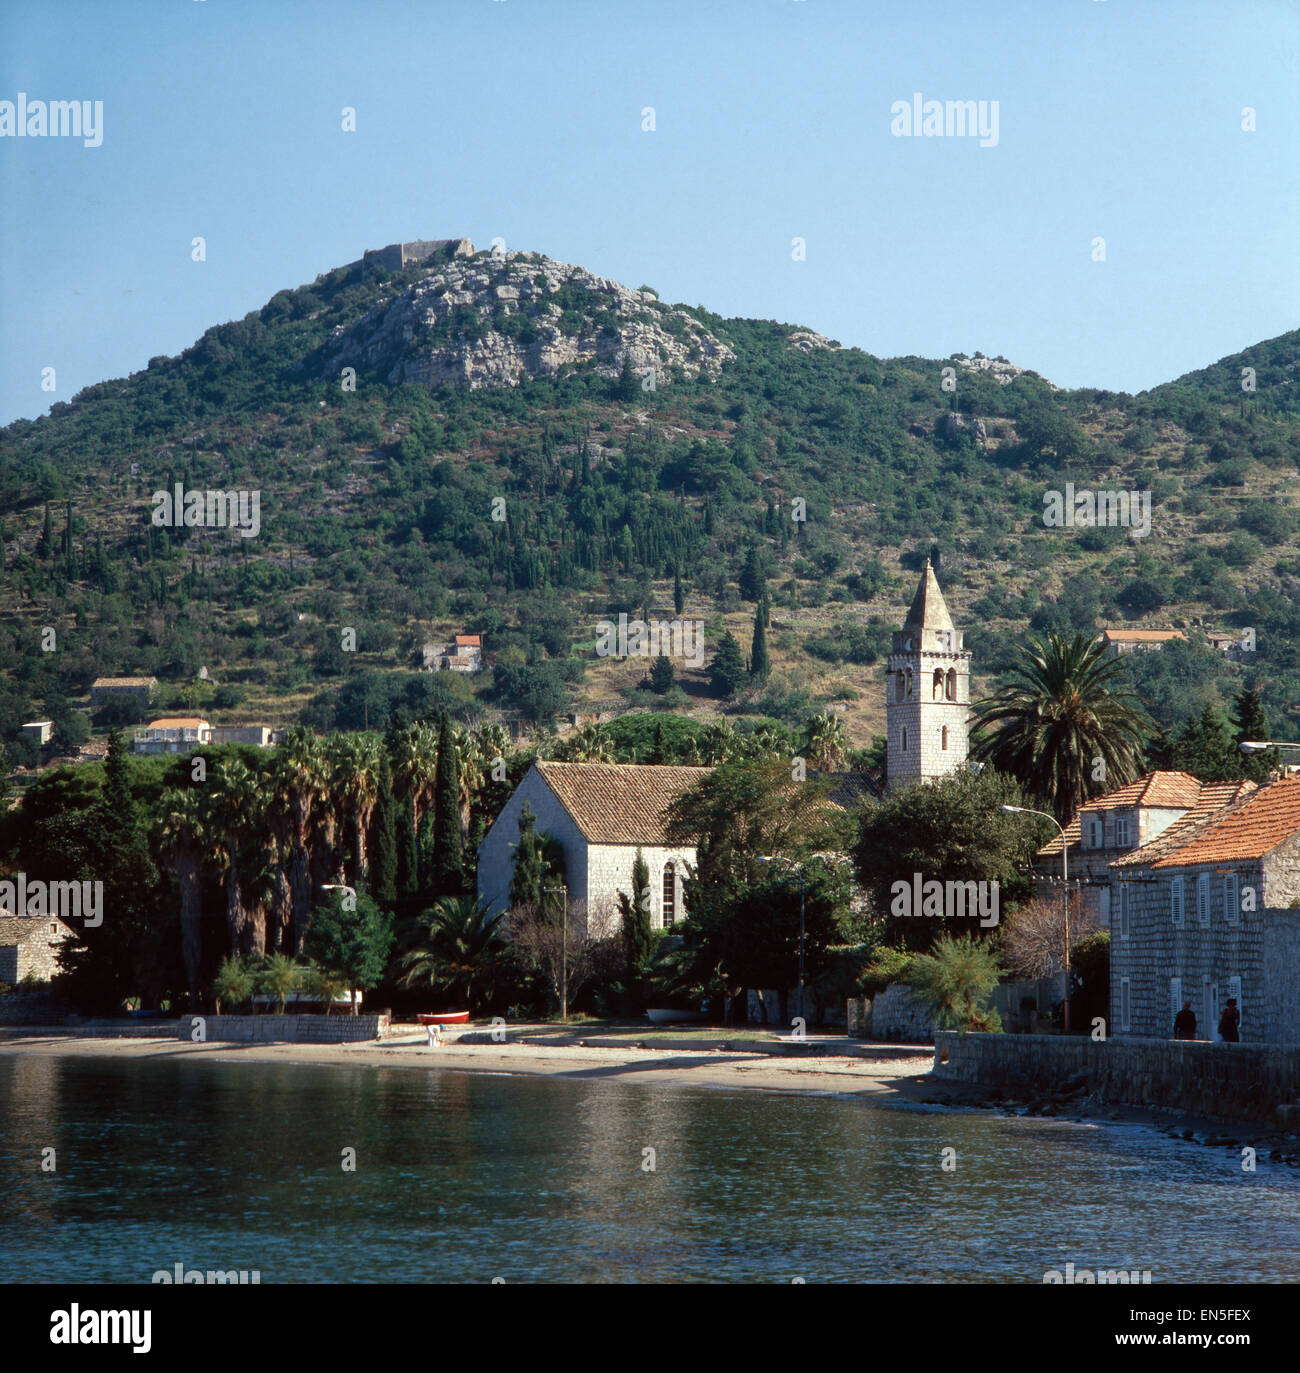 Urlaub in Dalmatien, Kroatien, Jugoslawien 1970er Jahre. Vacation in Dalmatia, Croatia, Yugoslavia 1970s. Stock Photo